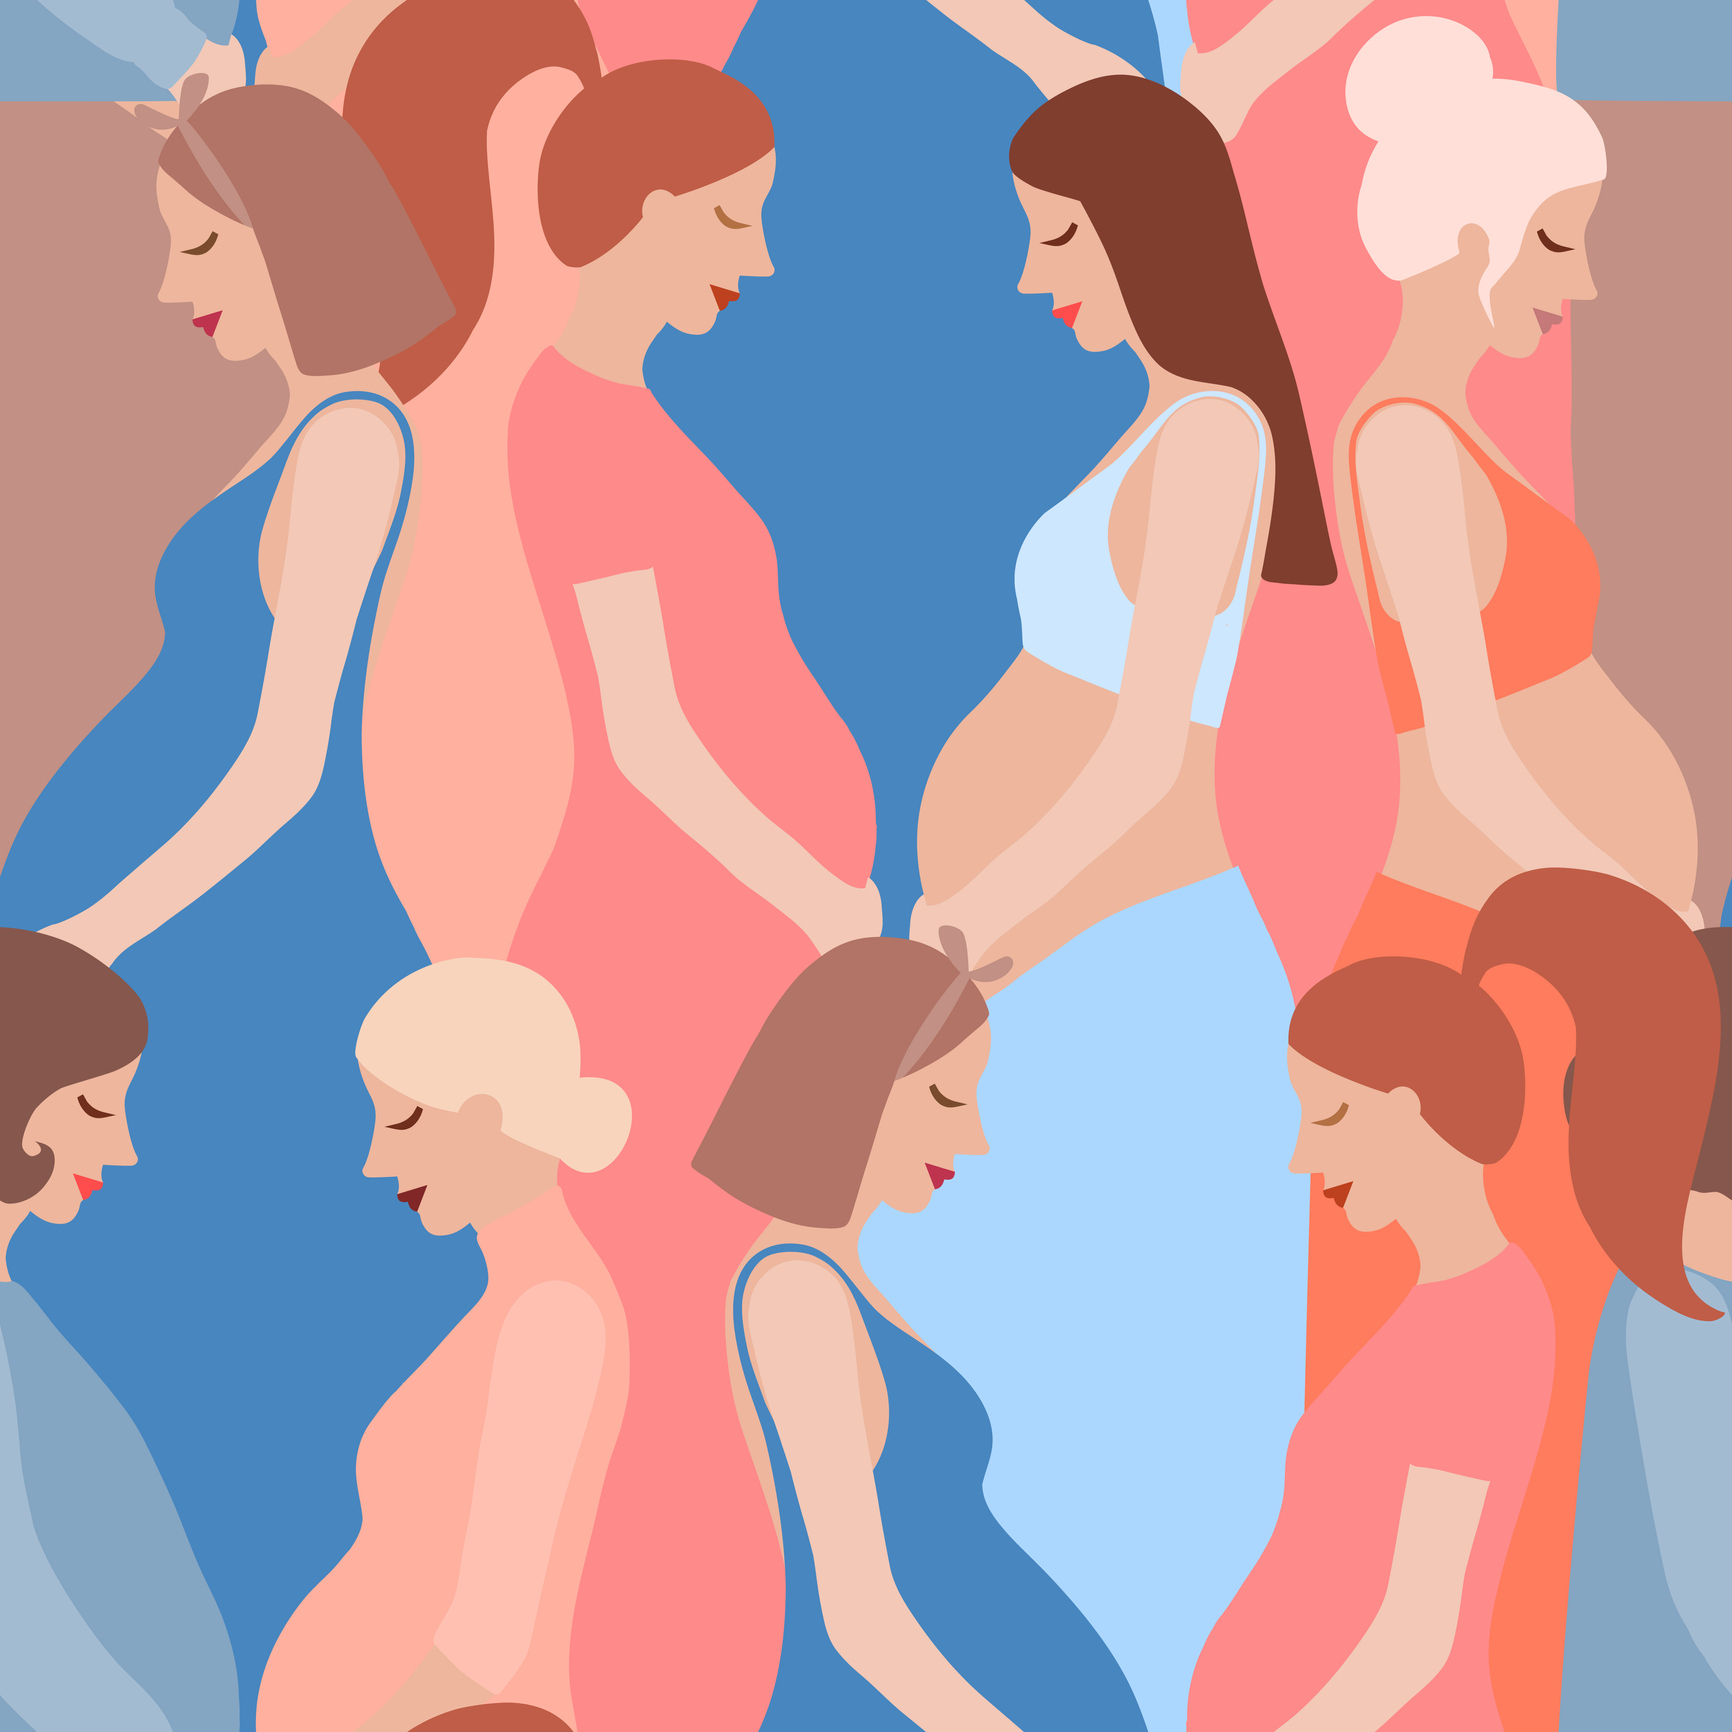 Os sintomas da gravidez podem variar de mulher para mulher e até mesmo de uma gravidez para outra na mesma mulher. No entanto, alguns sintomas comuns podem ser observados: